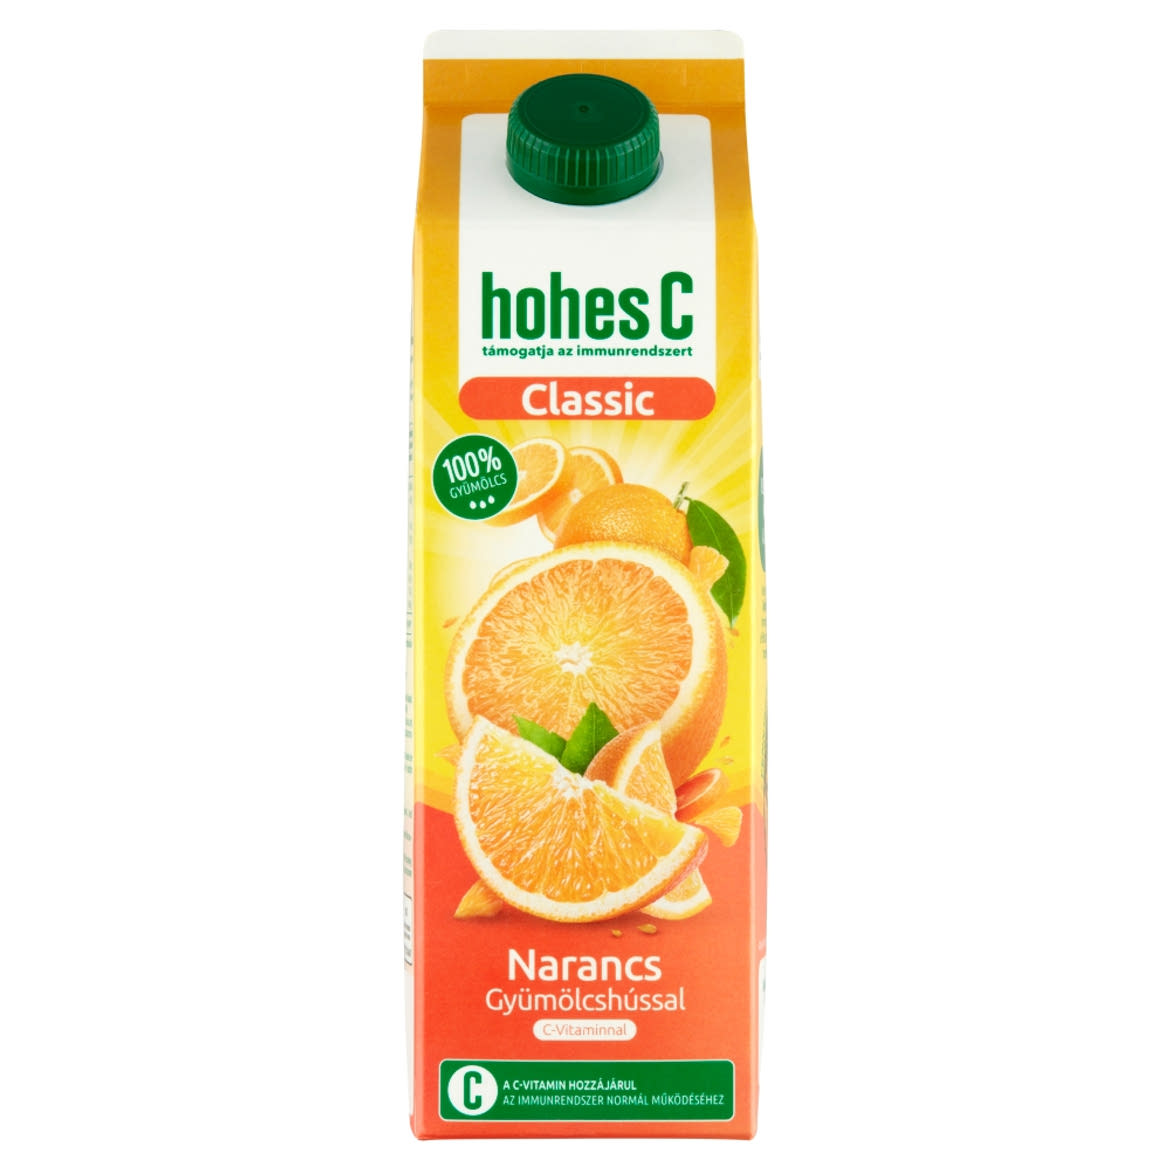 Hohes C Classic 100% narancslé gyümölcshússal